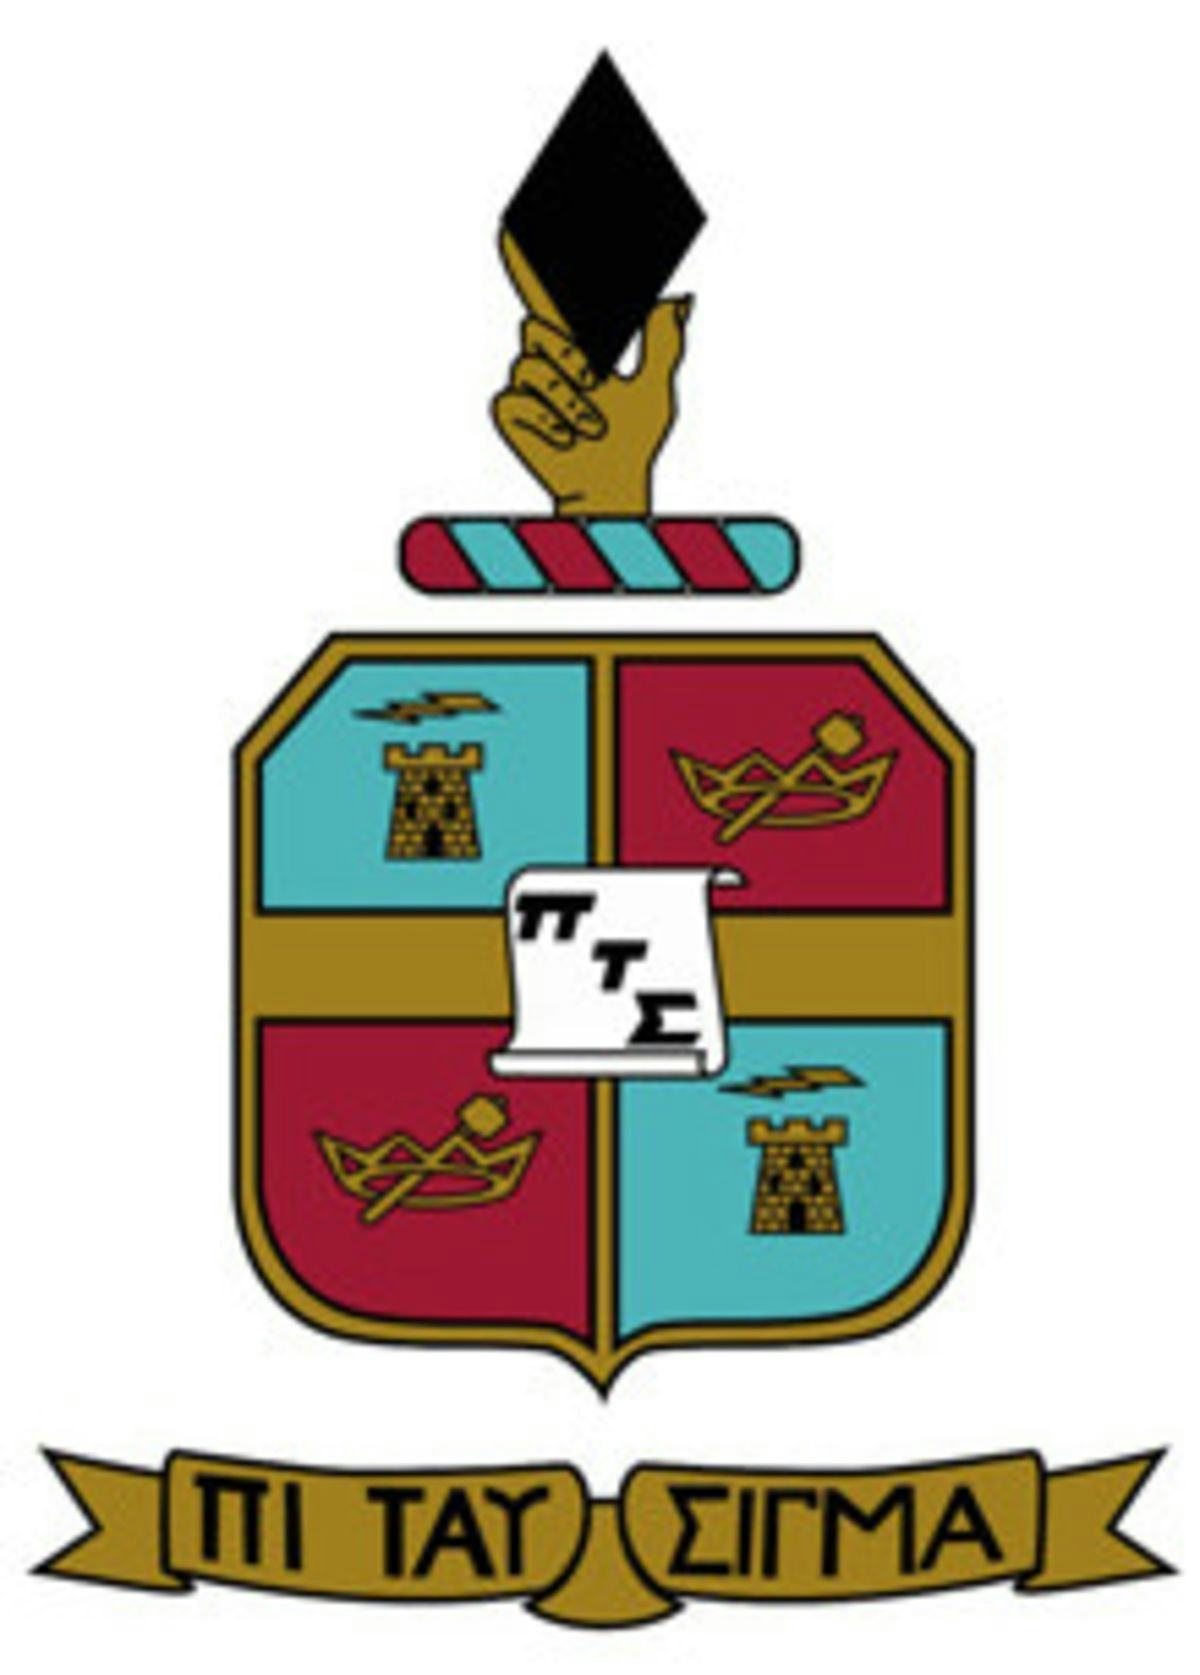 Pi Tau Sigma emblem